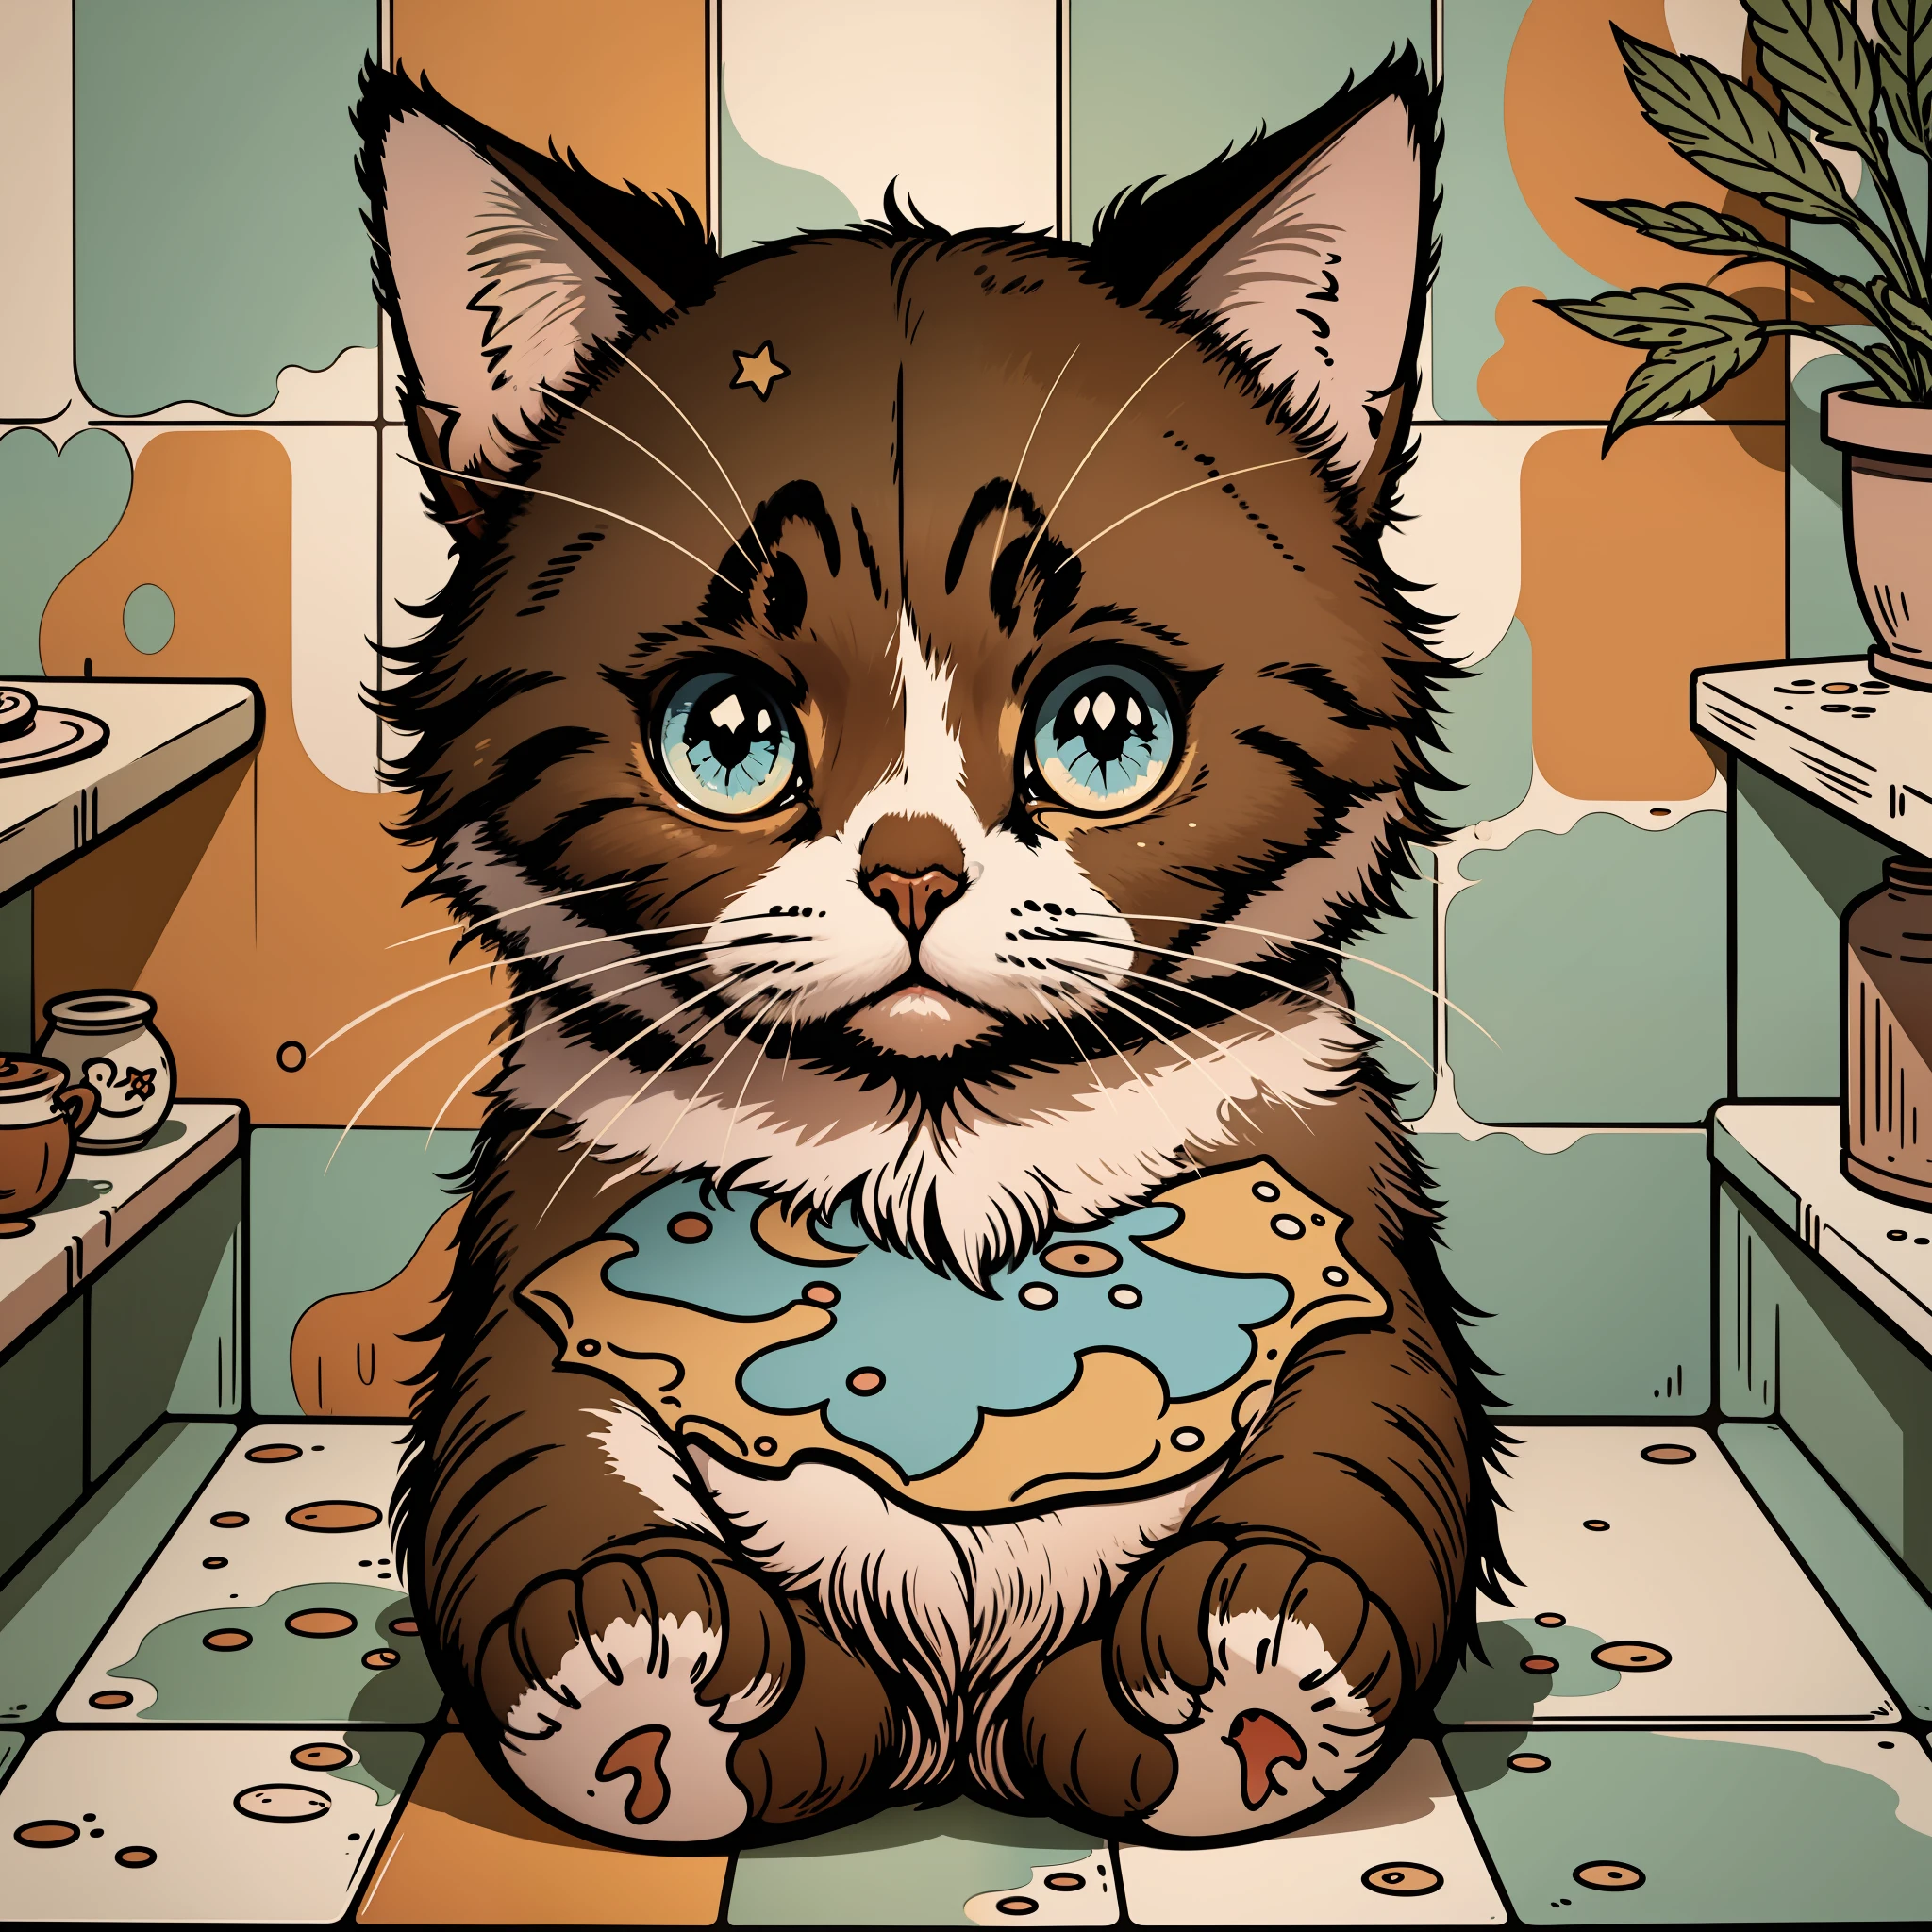 süße Cartoon-Katze, sticker, schöne Farben – Fliesen